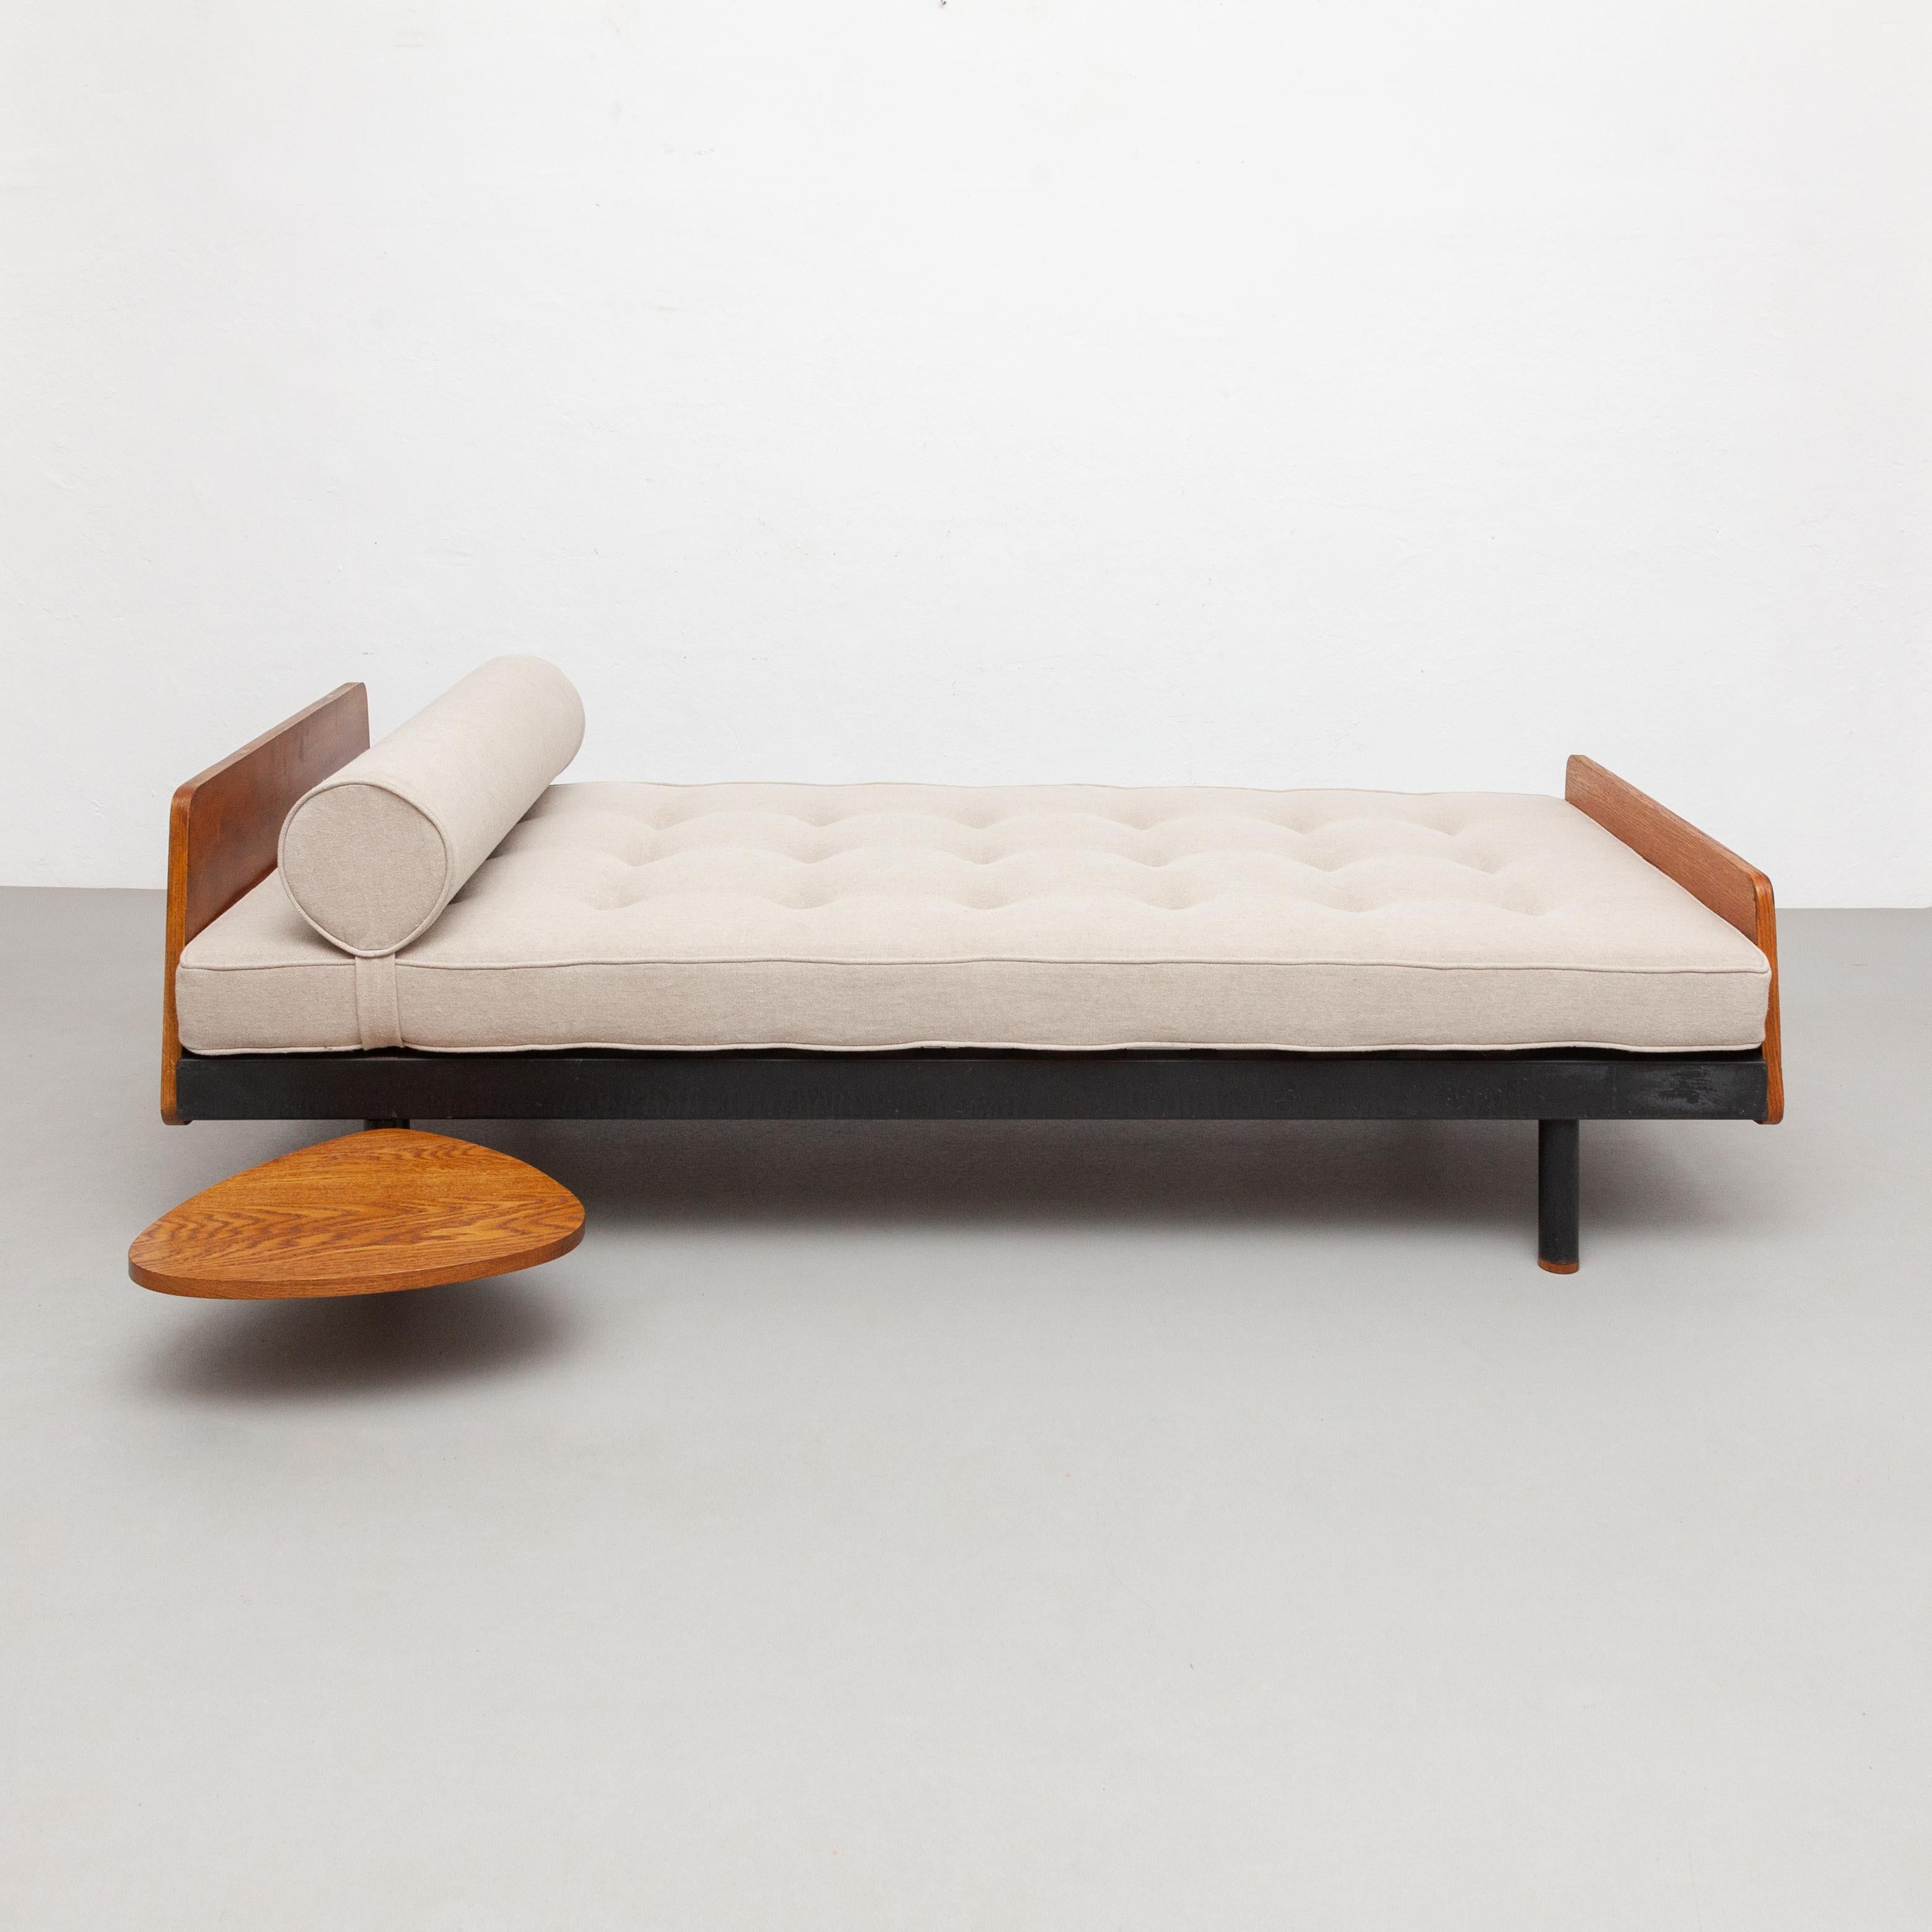 S.C.A.L. Tagesbett, entworfen von Jean Prouvé.
Hergestellt von Ateliers Prouve, Frankreich, um 1950.

Dieses Bett ist restauriert worden.
Metallrahmen, neue Polsterung.
Der Tisch wurde nach den Originalmaßen neu angefertigt.

In gutem